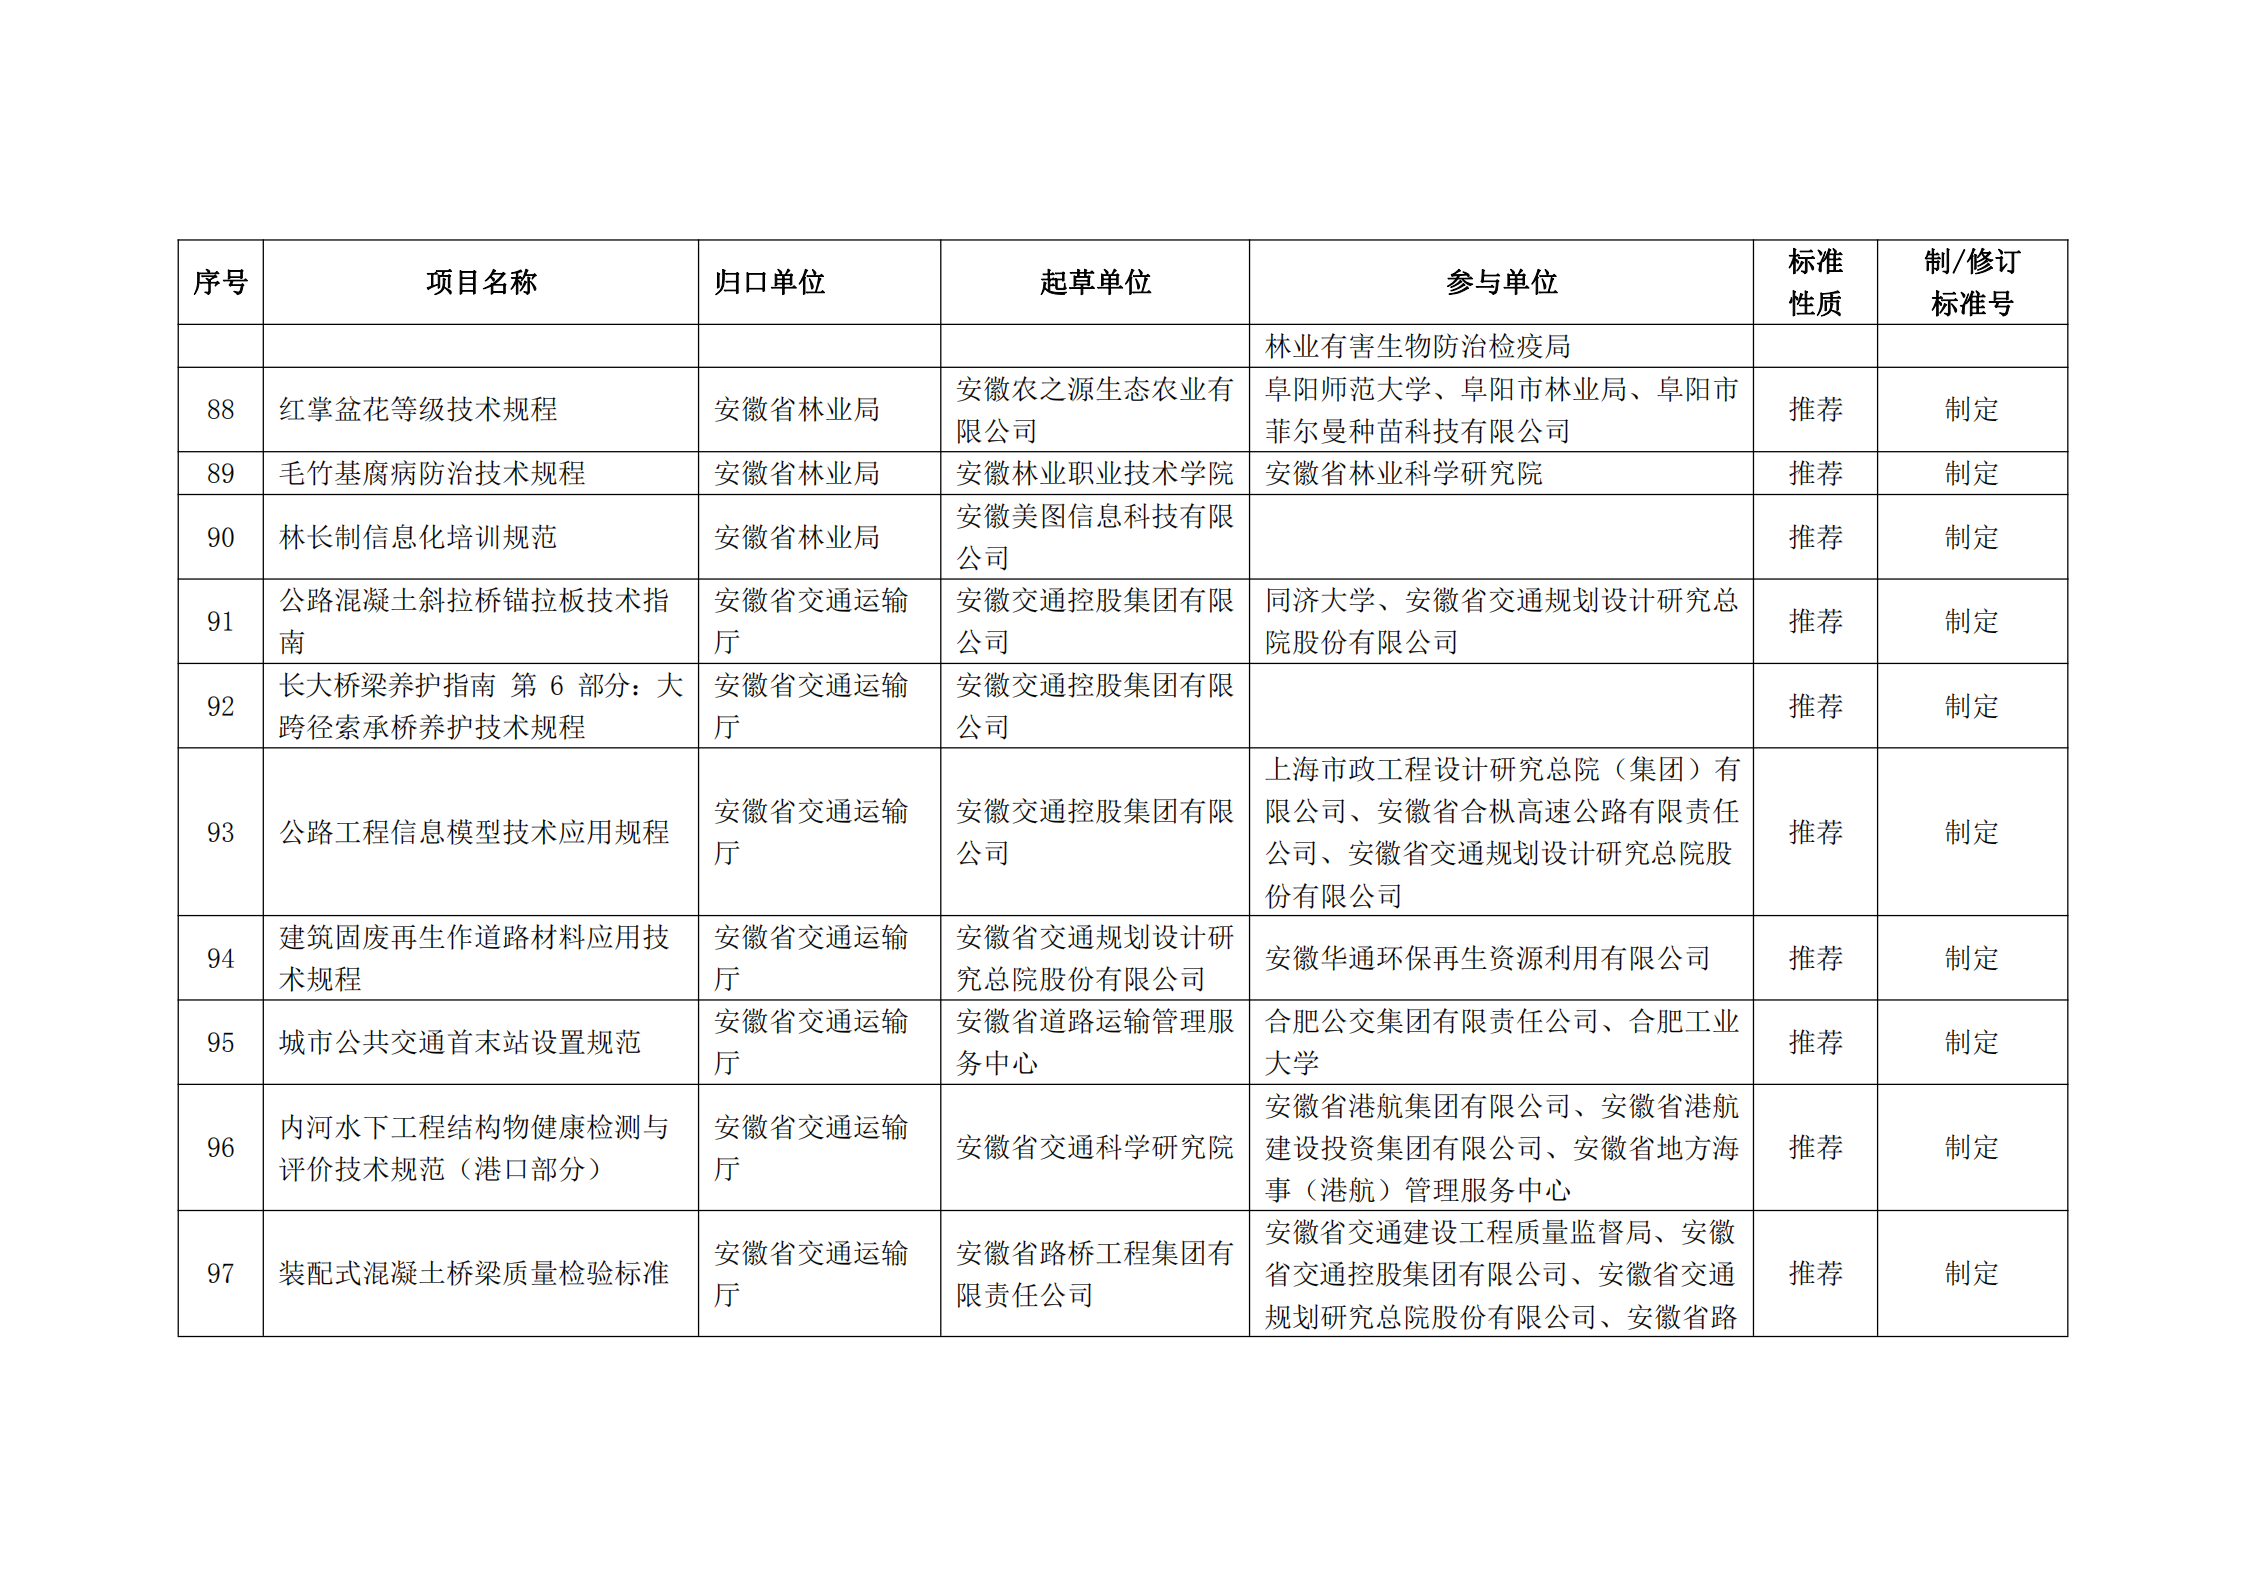 2020 年第二批安徽省地方标准制、修订计划项目汇总表(图10)